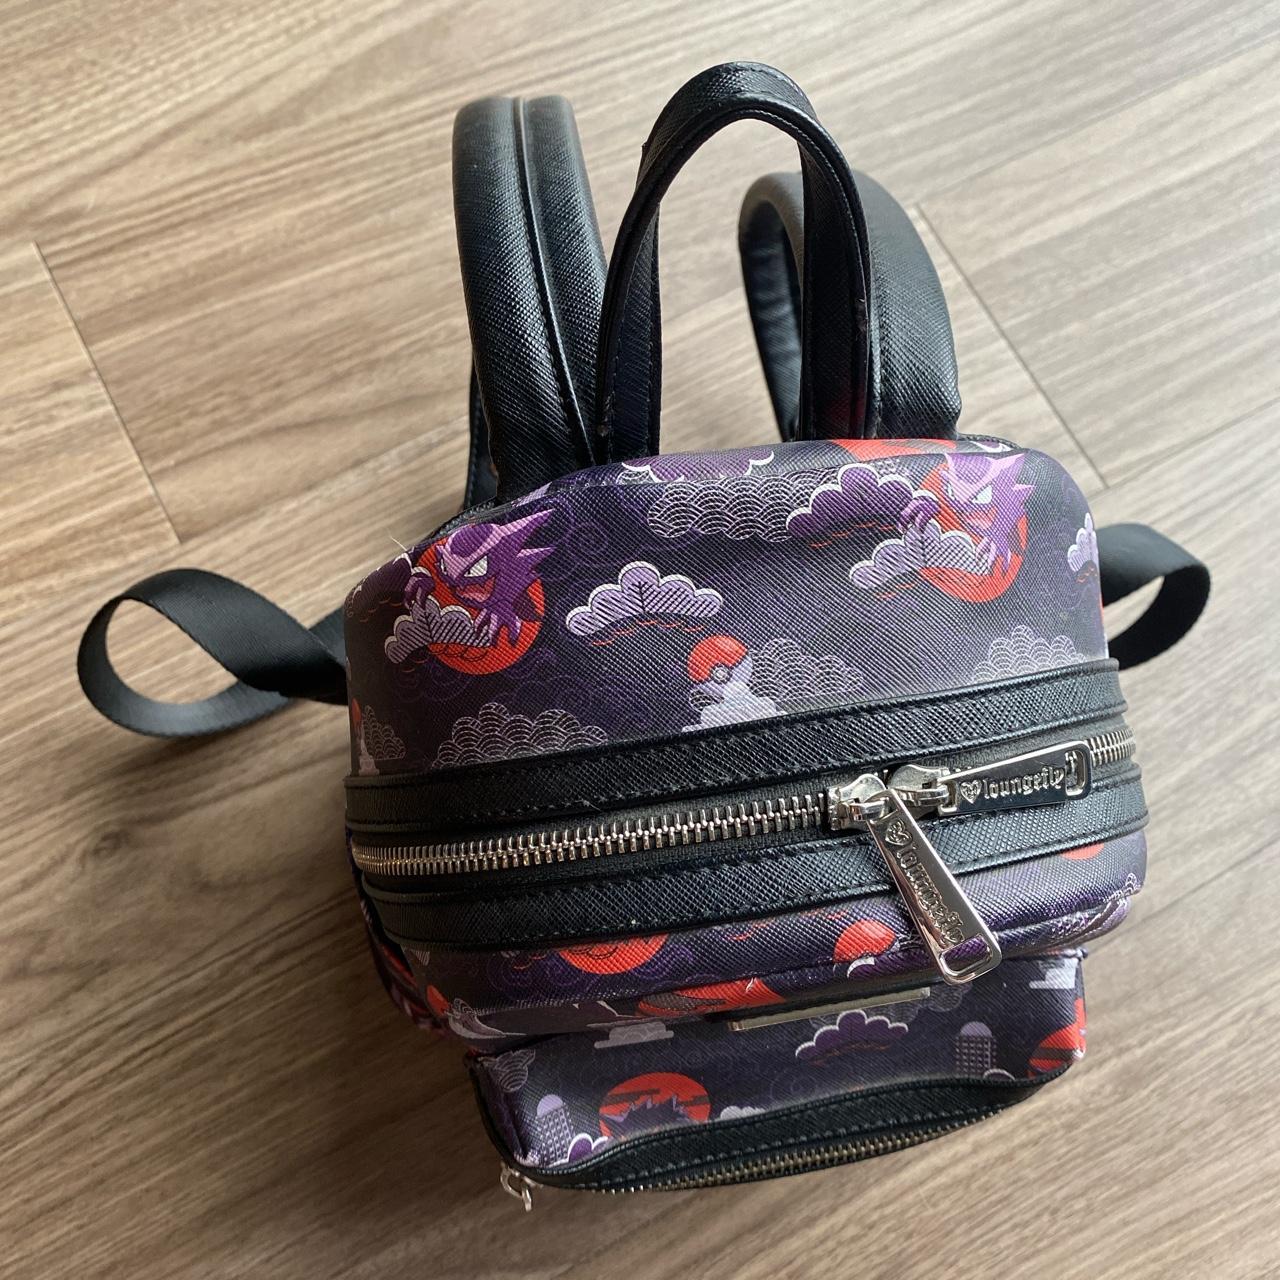 Pokemon Ghost Type Backpack, Women's